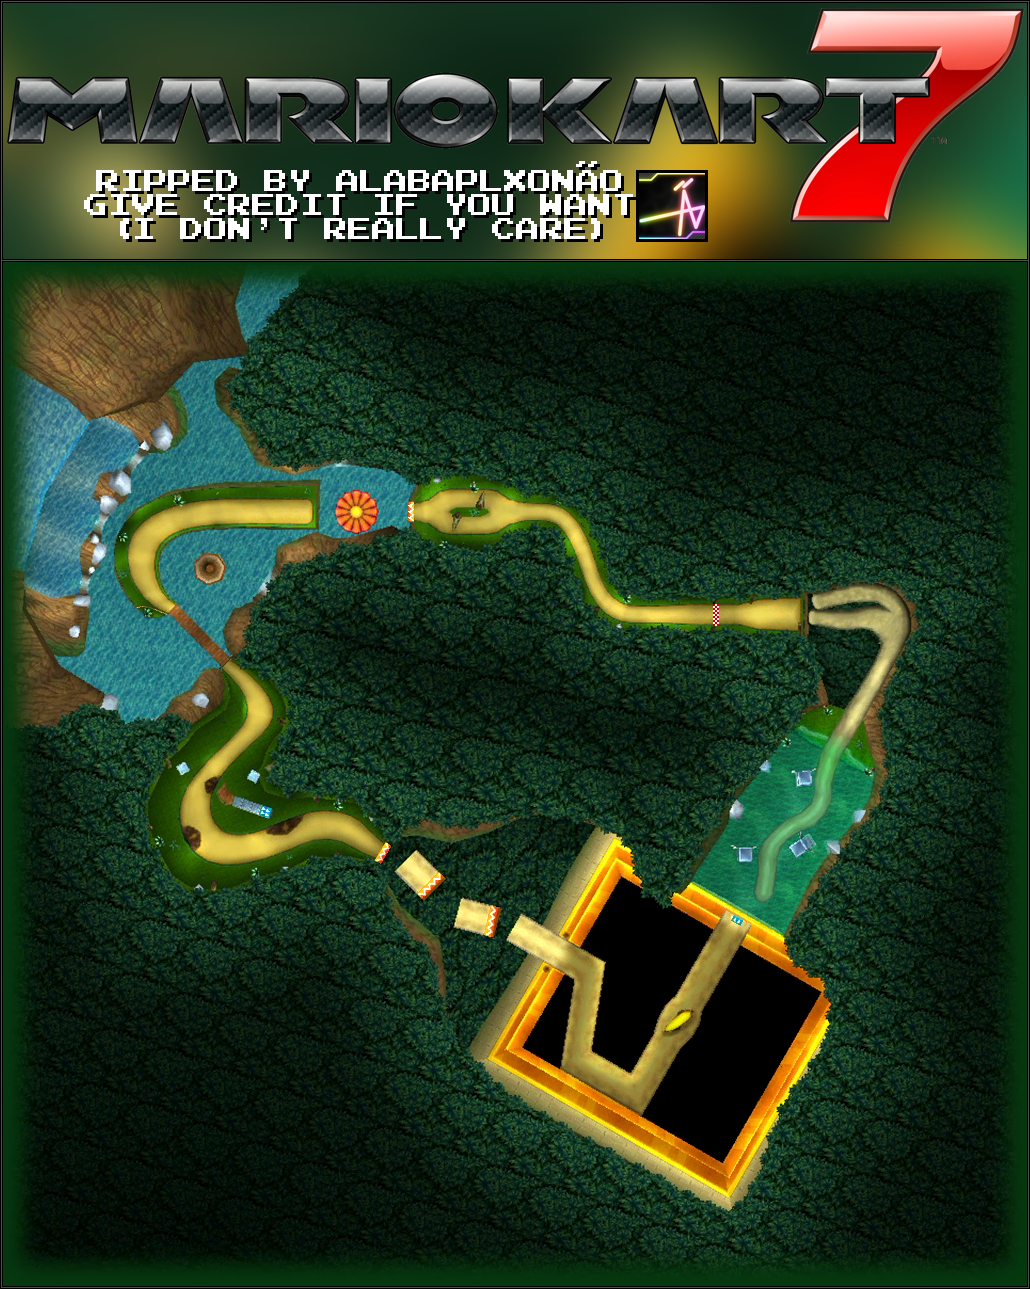 Mario Kart 7 - DK Jungle